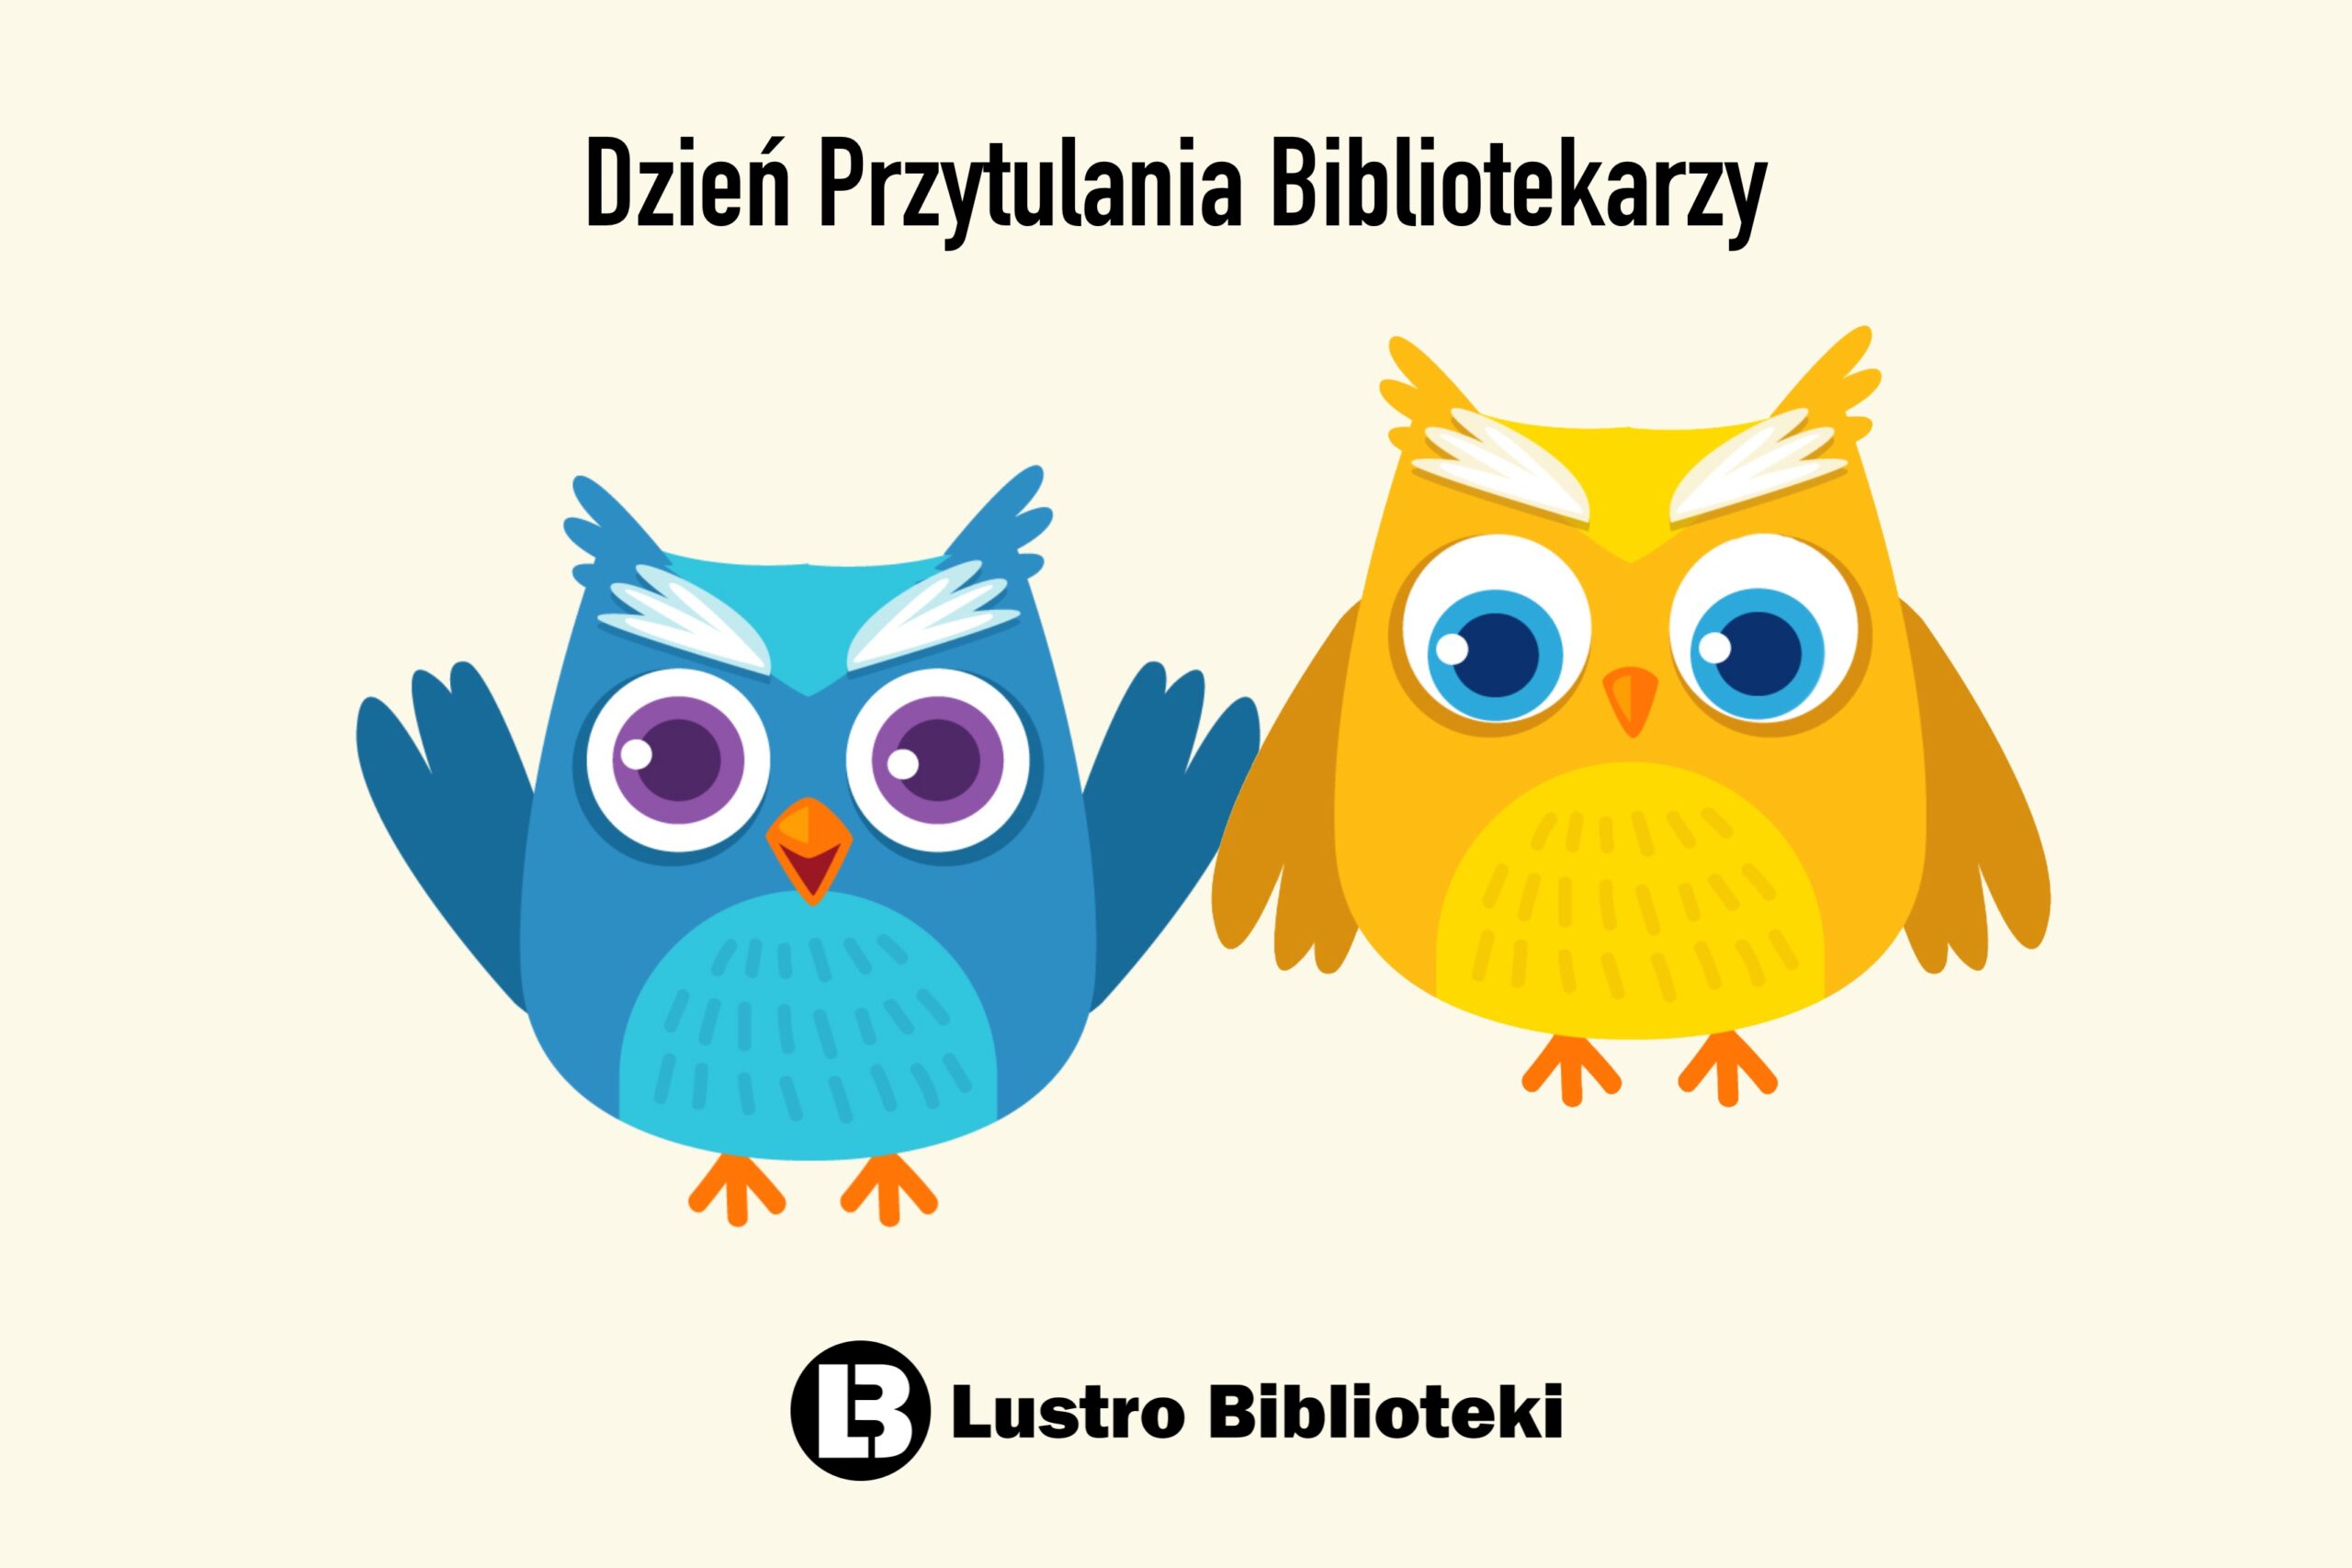 Dzień-Przytulania-Bibliotekarzy-scaled